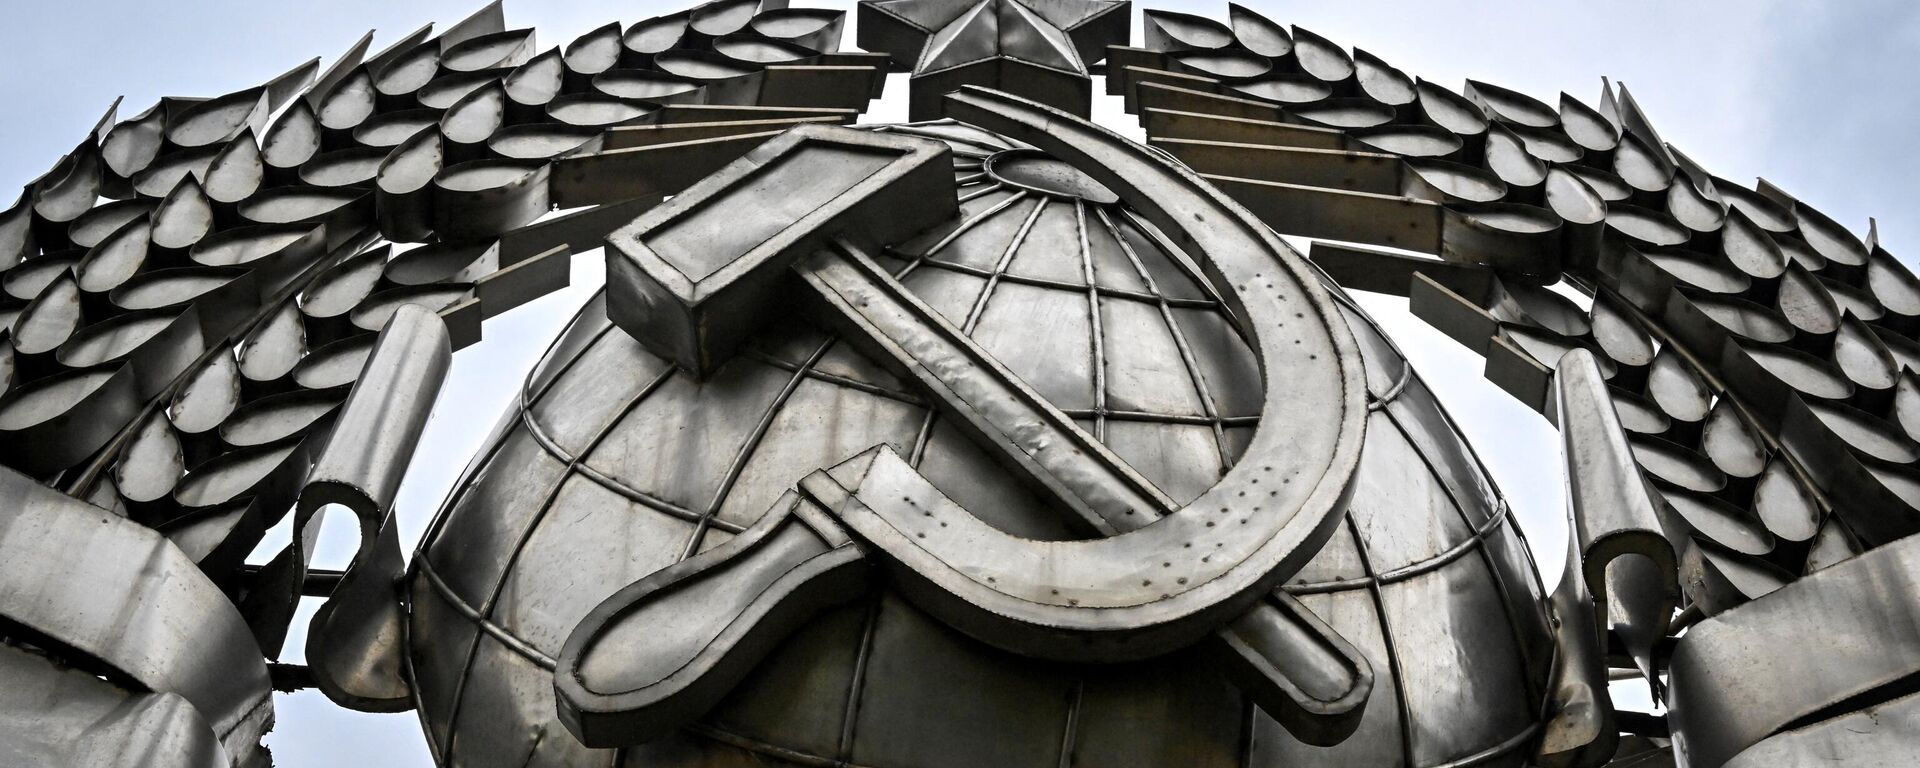 Un emblema de la Unión Soviética que fue removido tras su desintegración y hoy figura en un parque de memoria en Moscú. - Sputnik Mundo, 1920, 29.12.2022